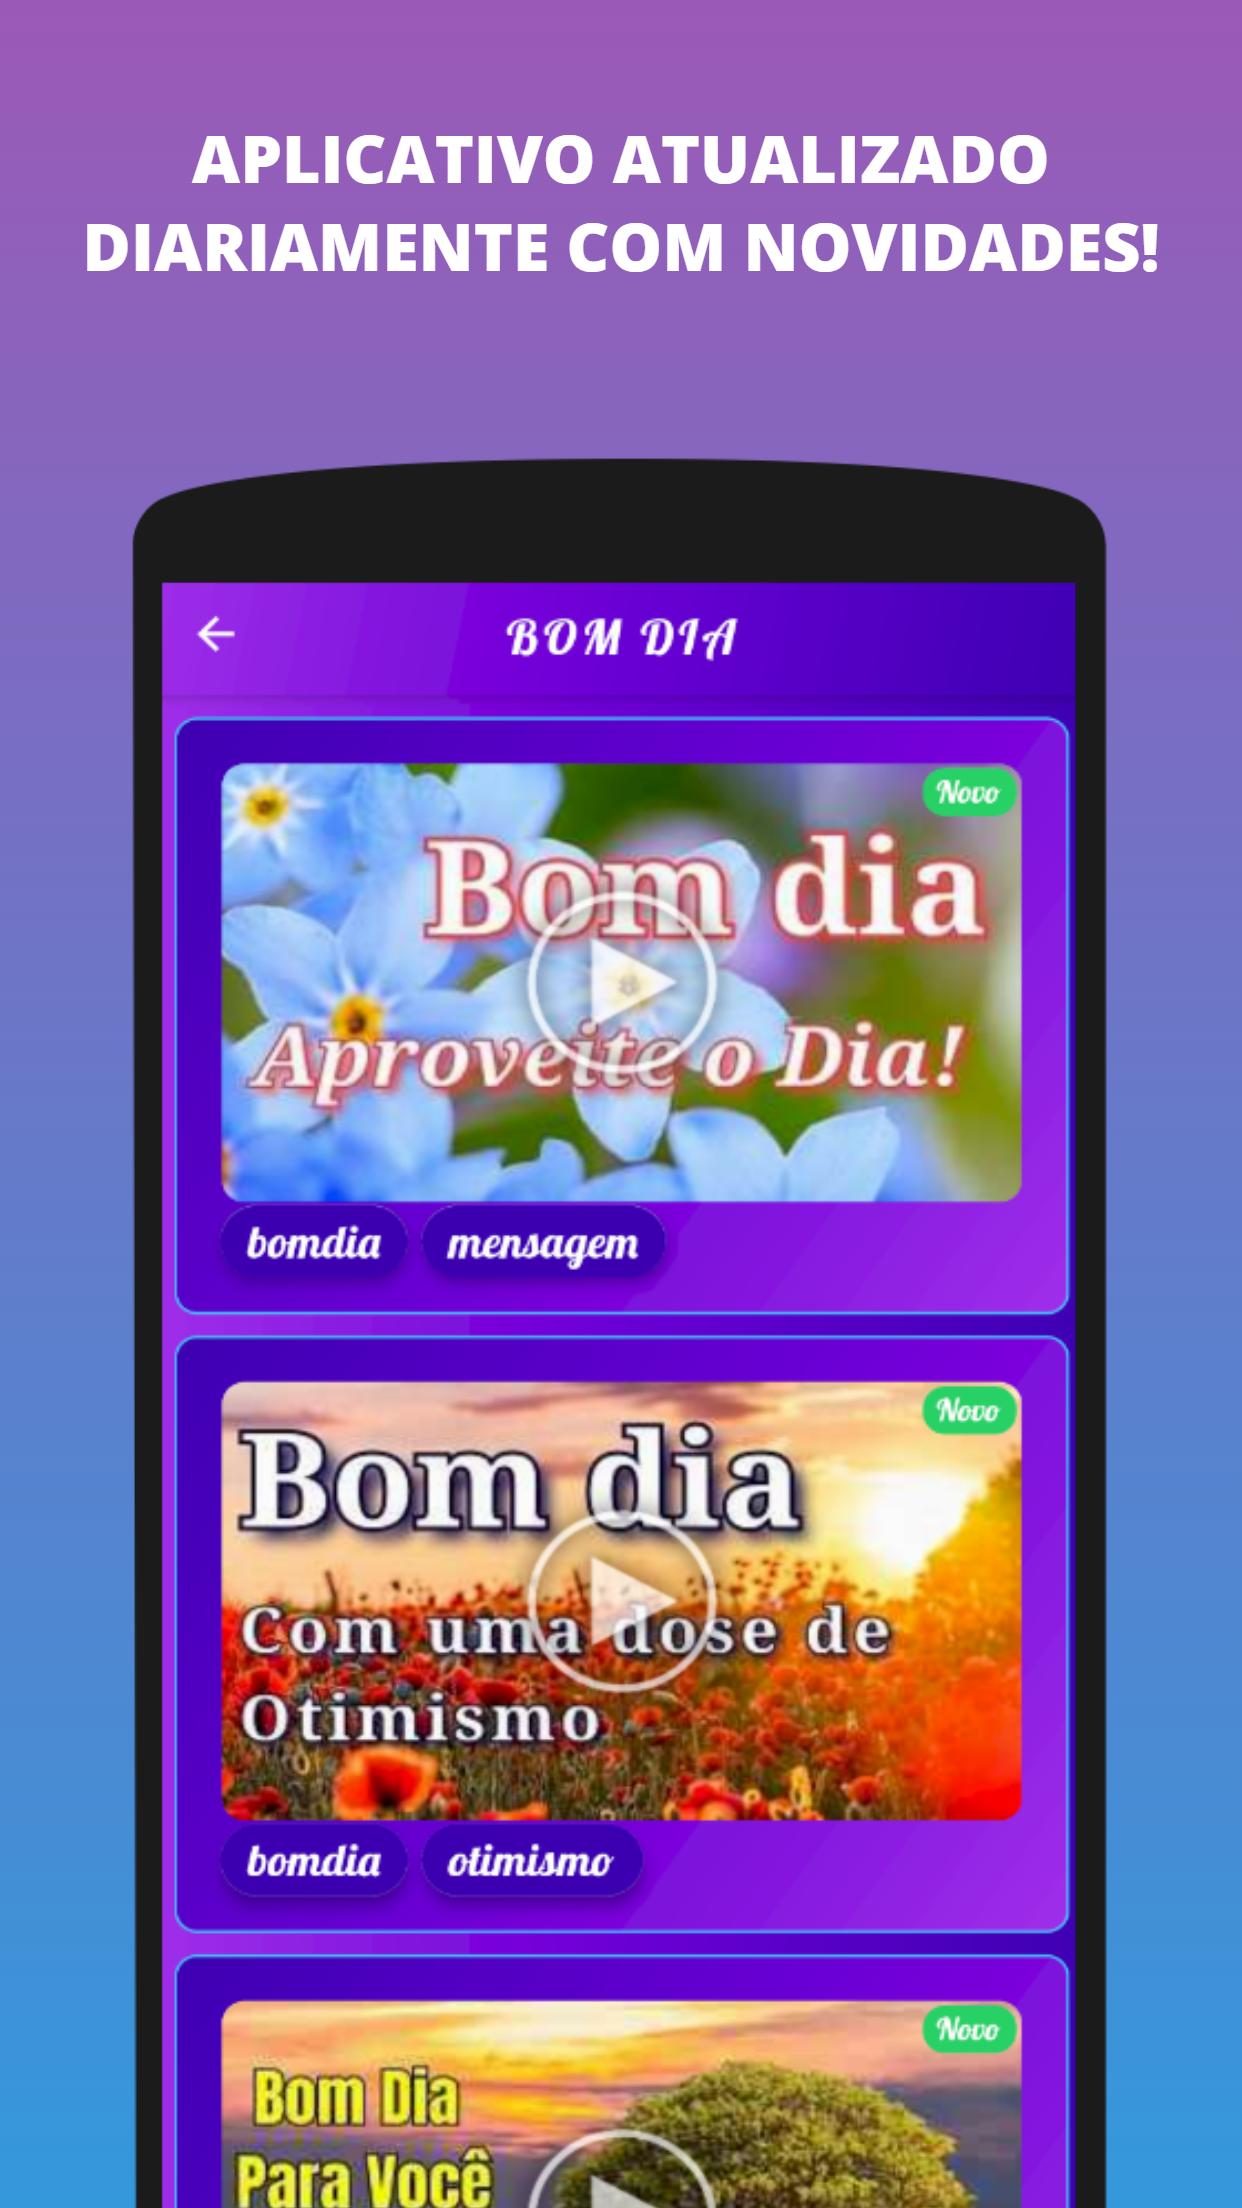 Mensagens Bom Dia Tarde Noite APK for Android Download